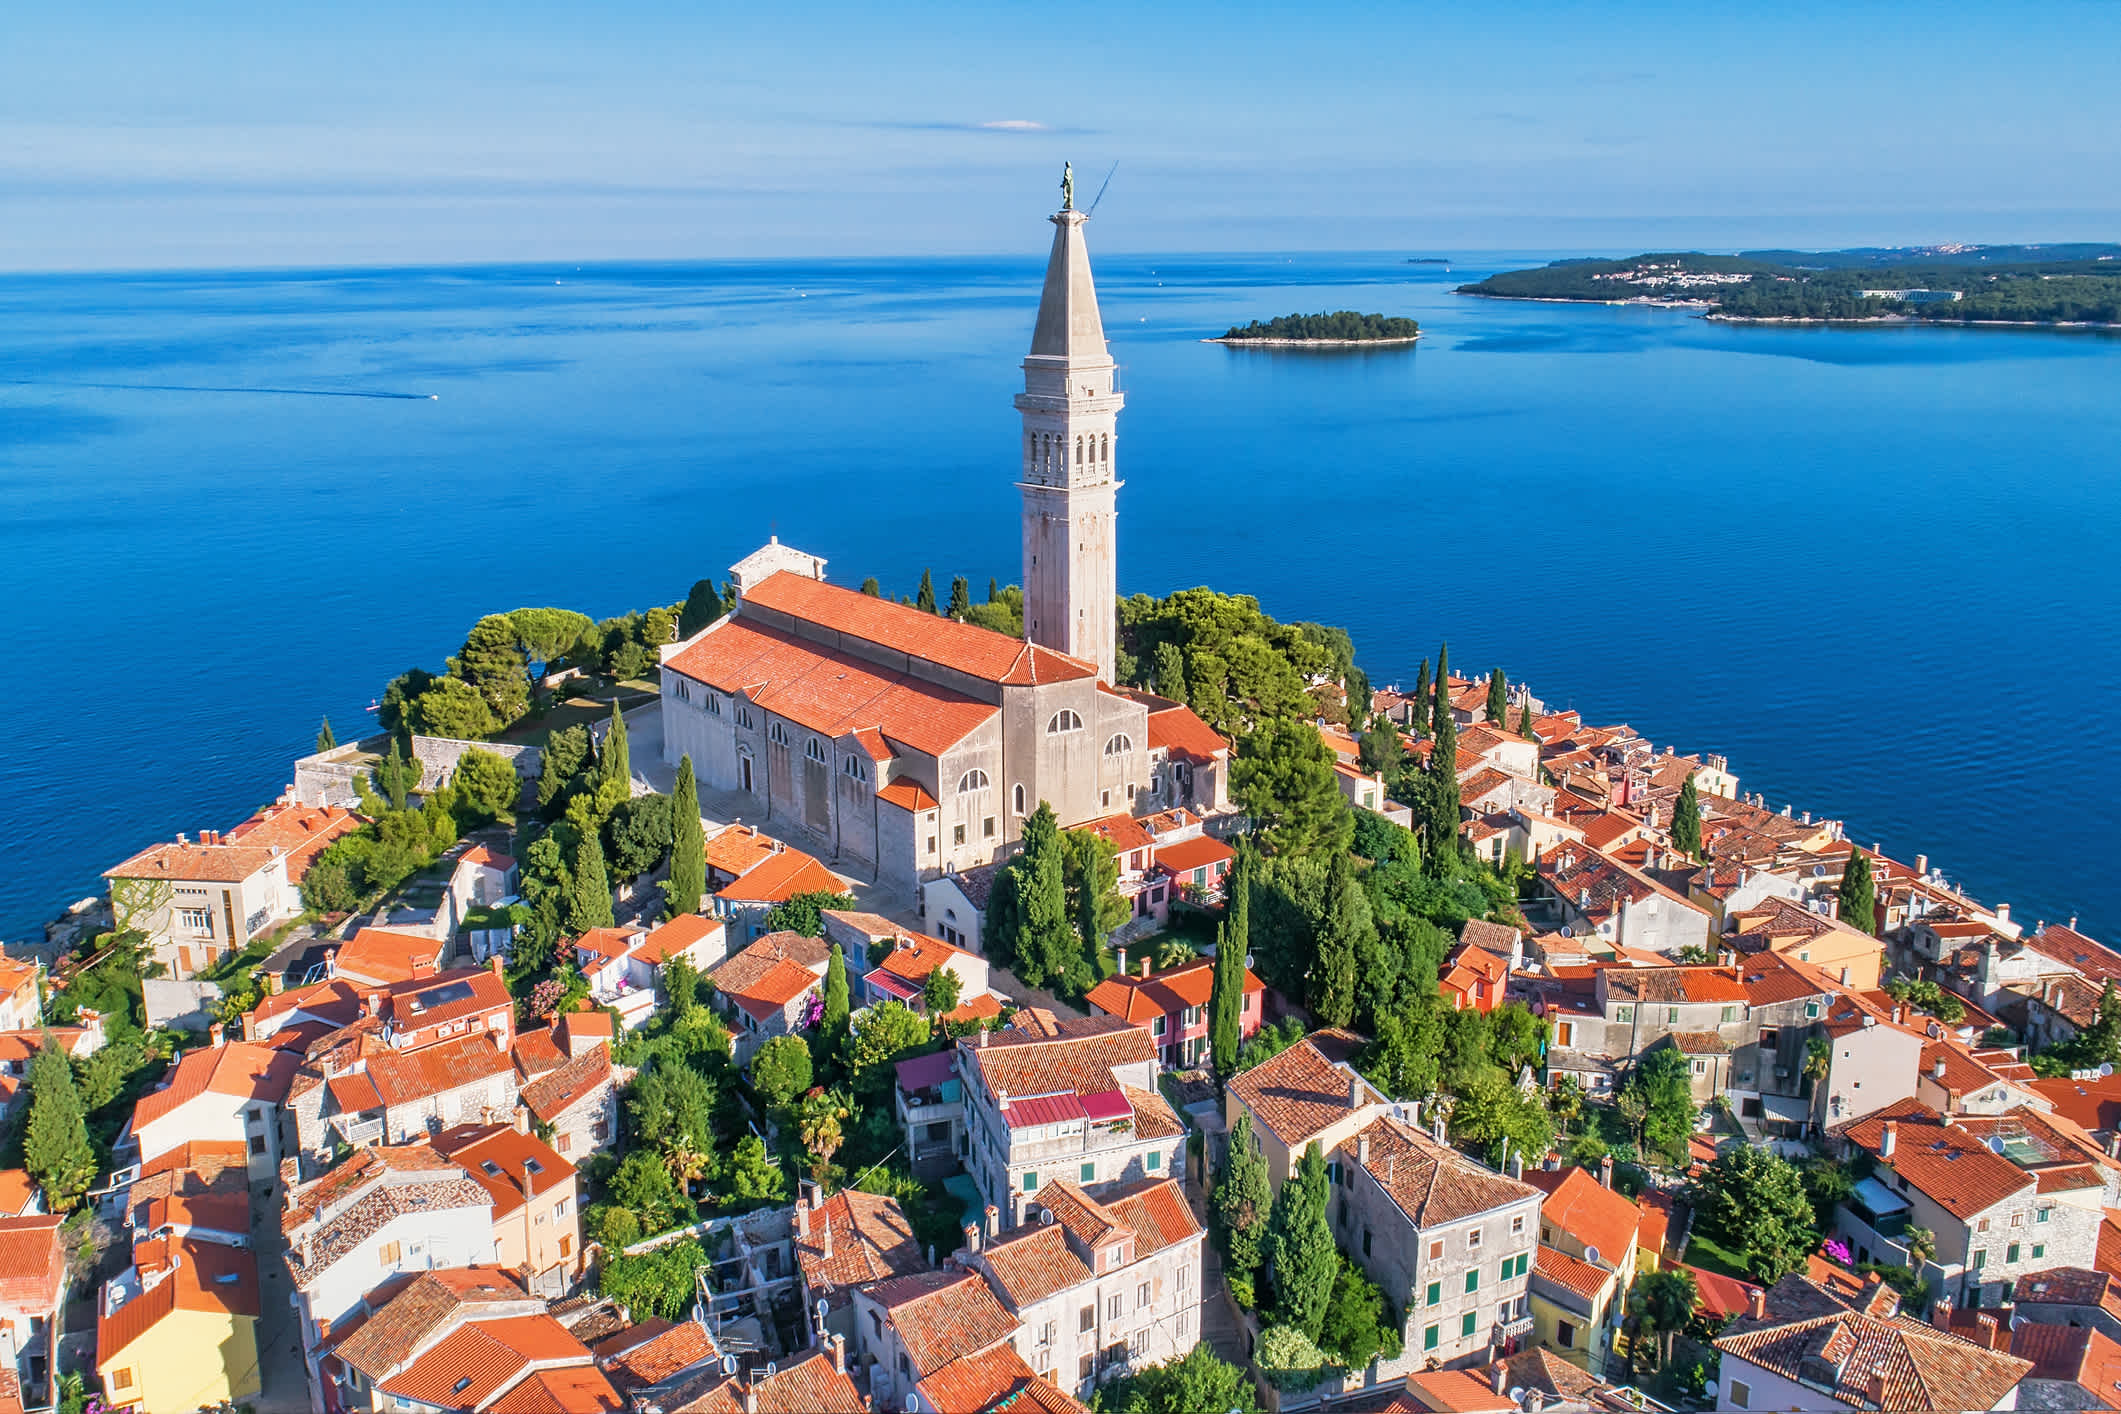 Vue aérienne de la vieille ville de Rovinj, sur la péninsule d'Istrie, au nord de la Croatie.
